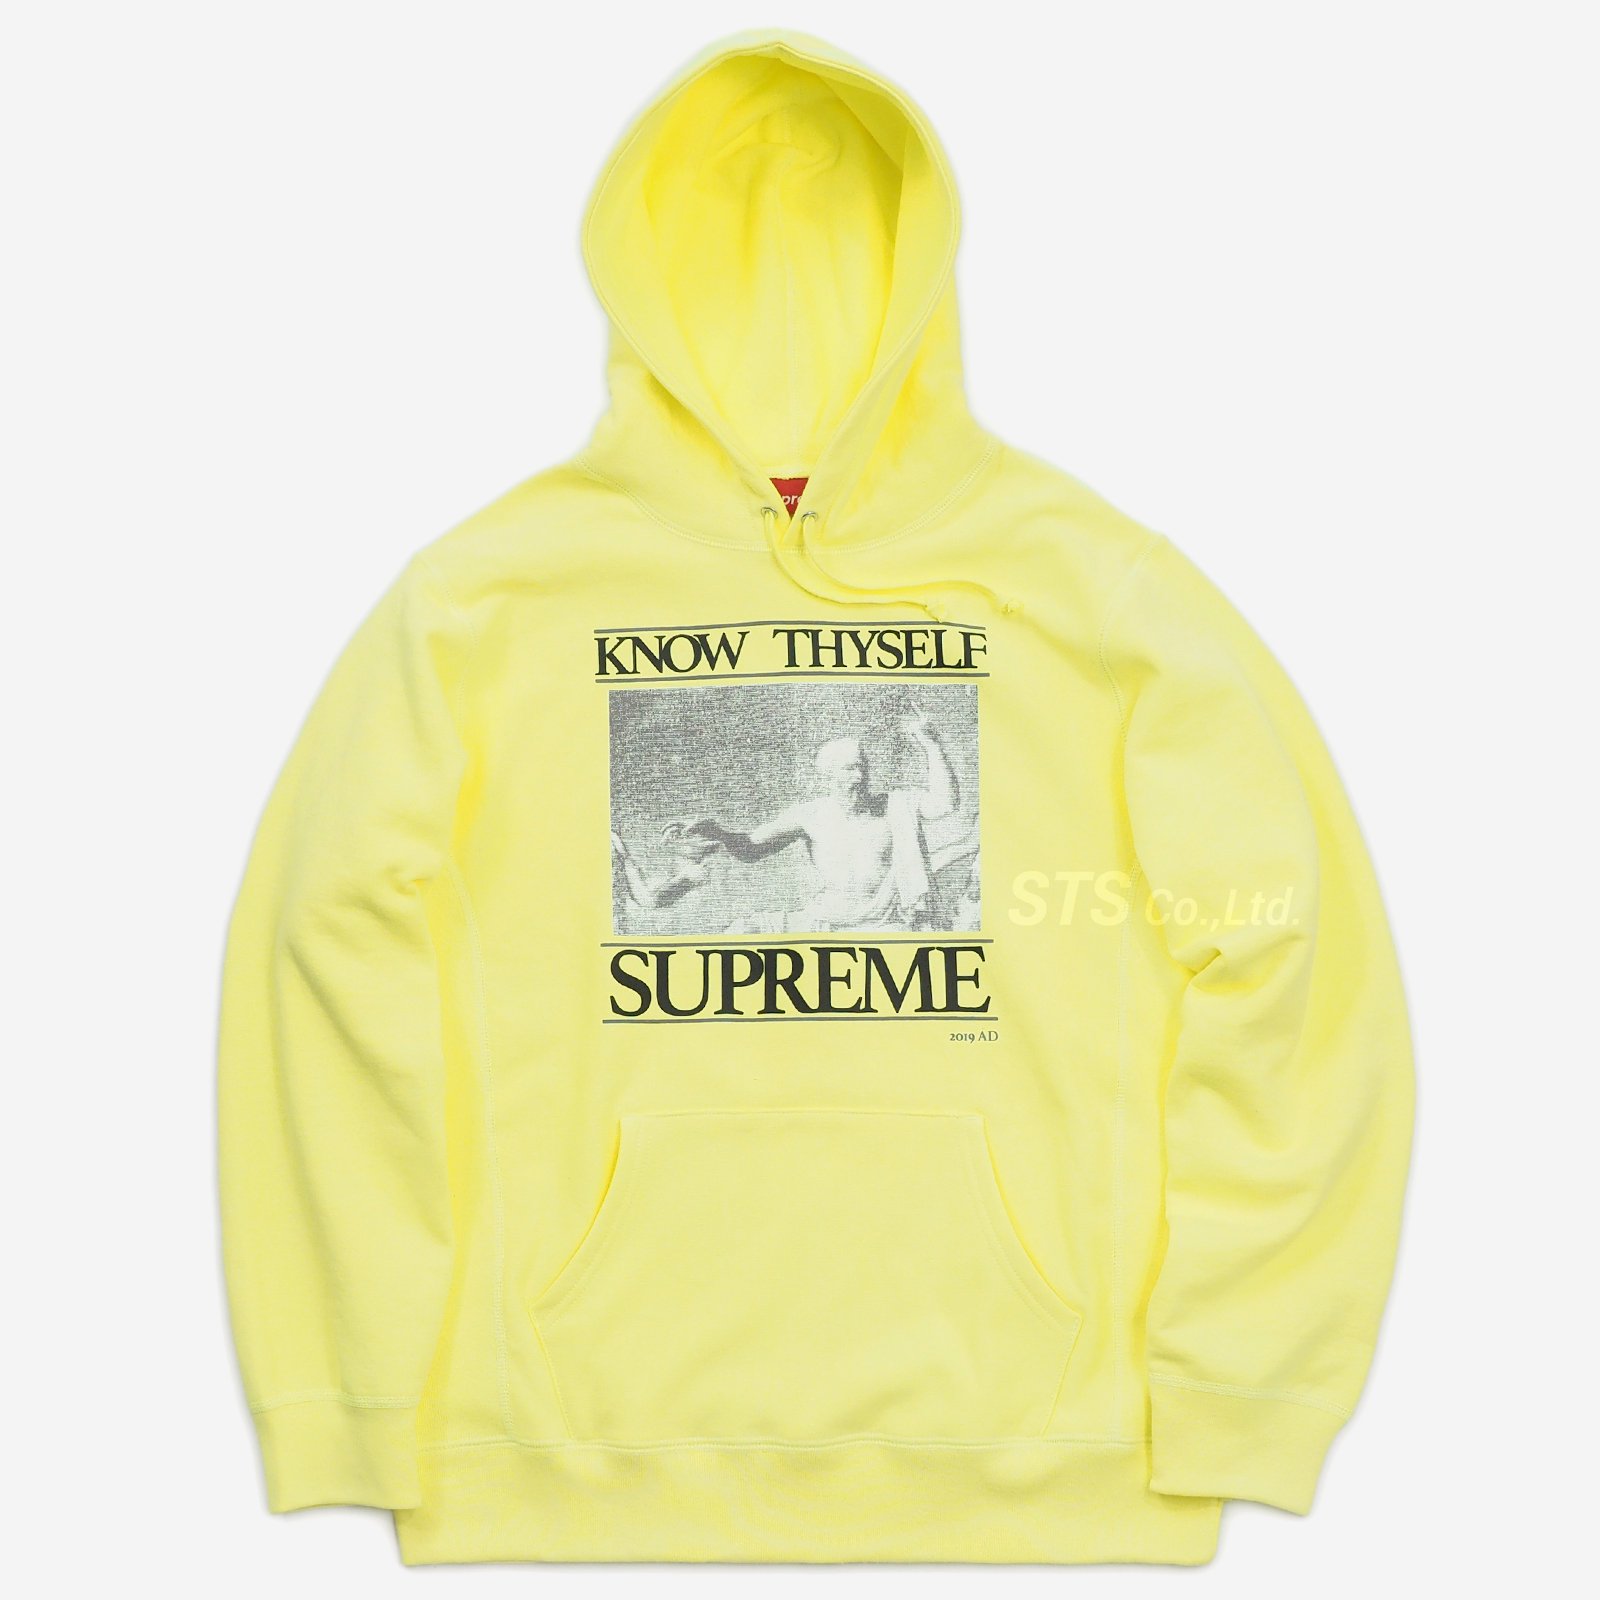 Know Thyself Hooded Sweatshirt XLサイズ